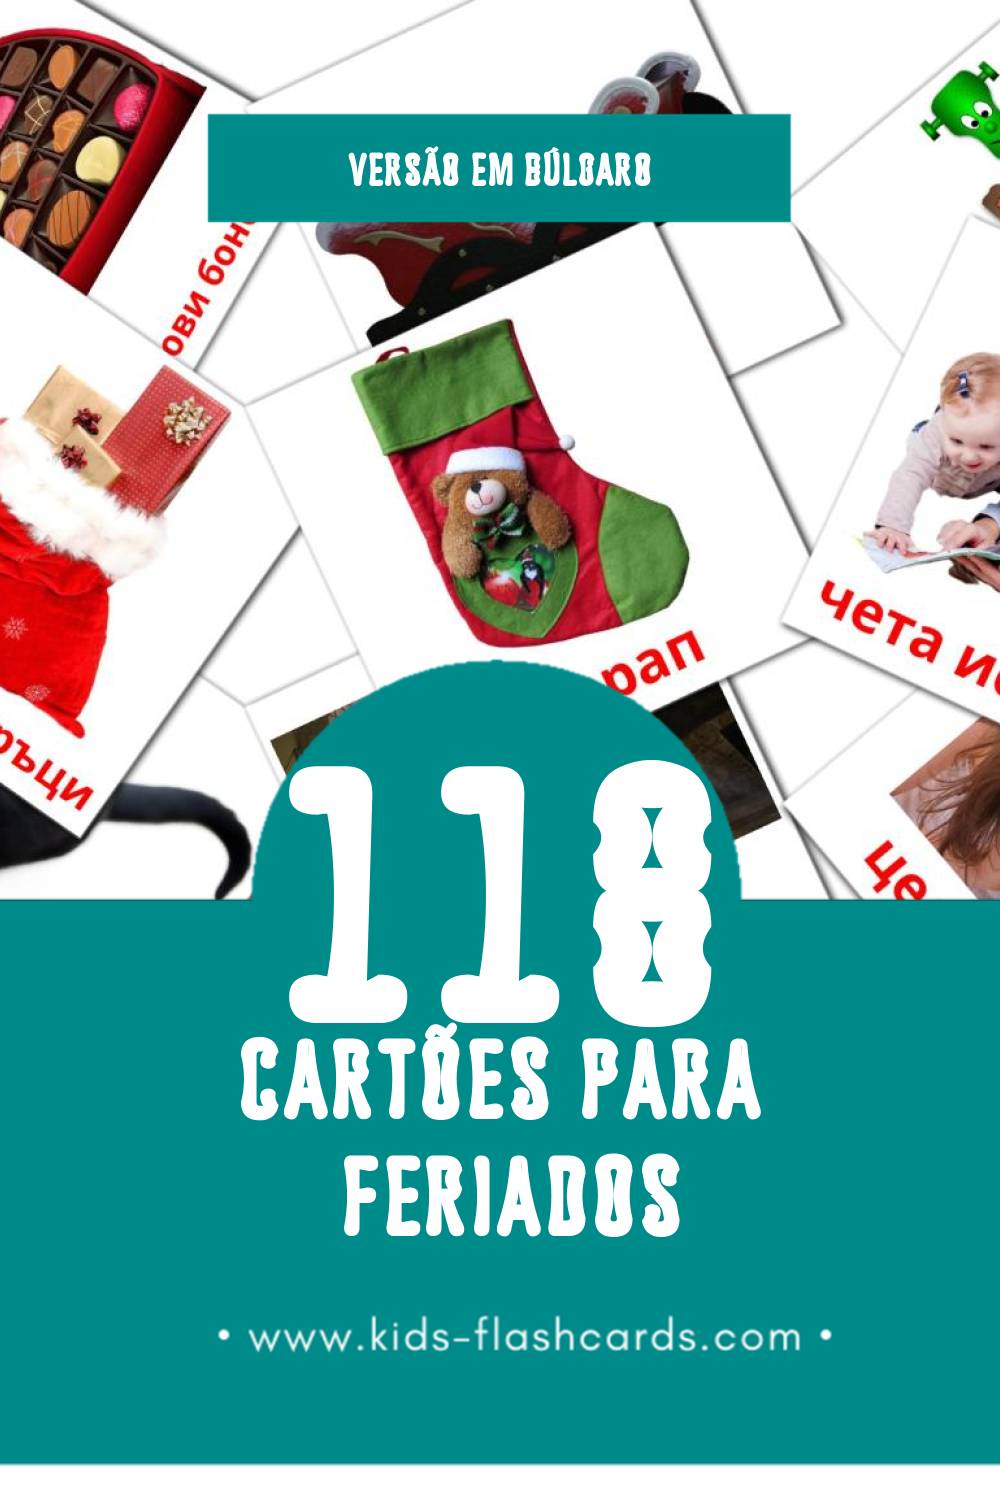 Flashcards de Ваканция Visuais para Toddlers (118 cartões em Búlgaro)